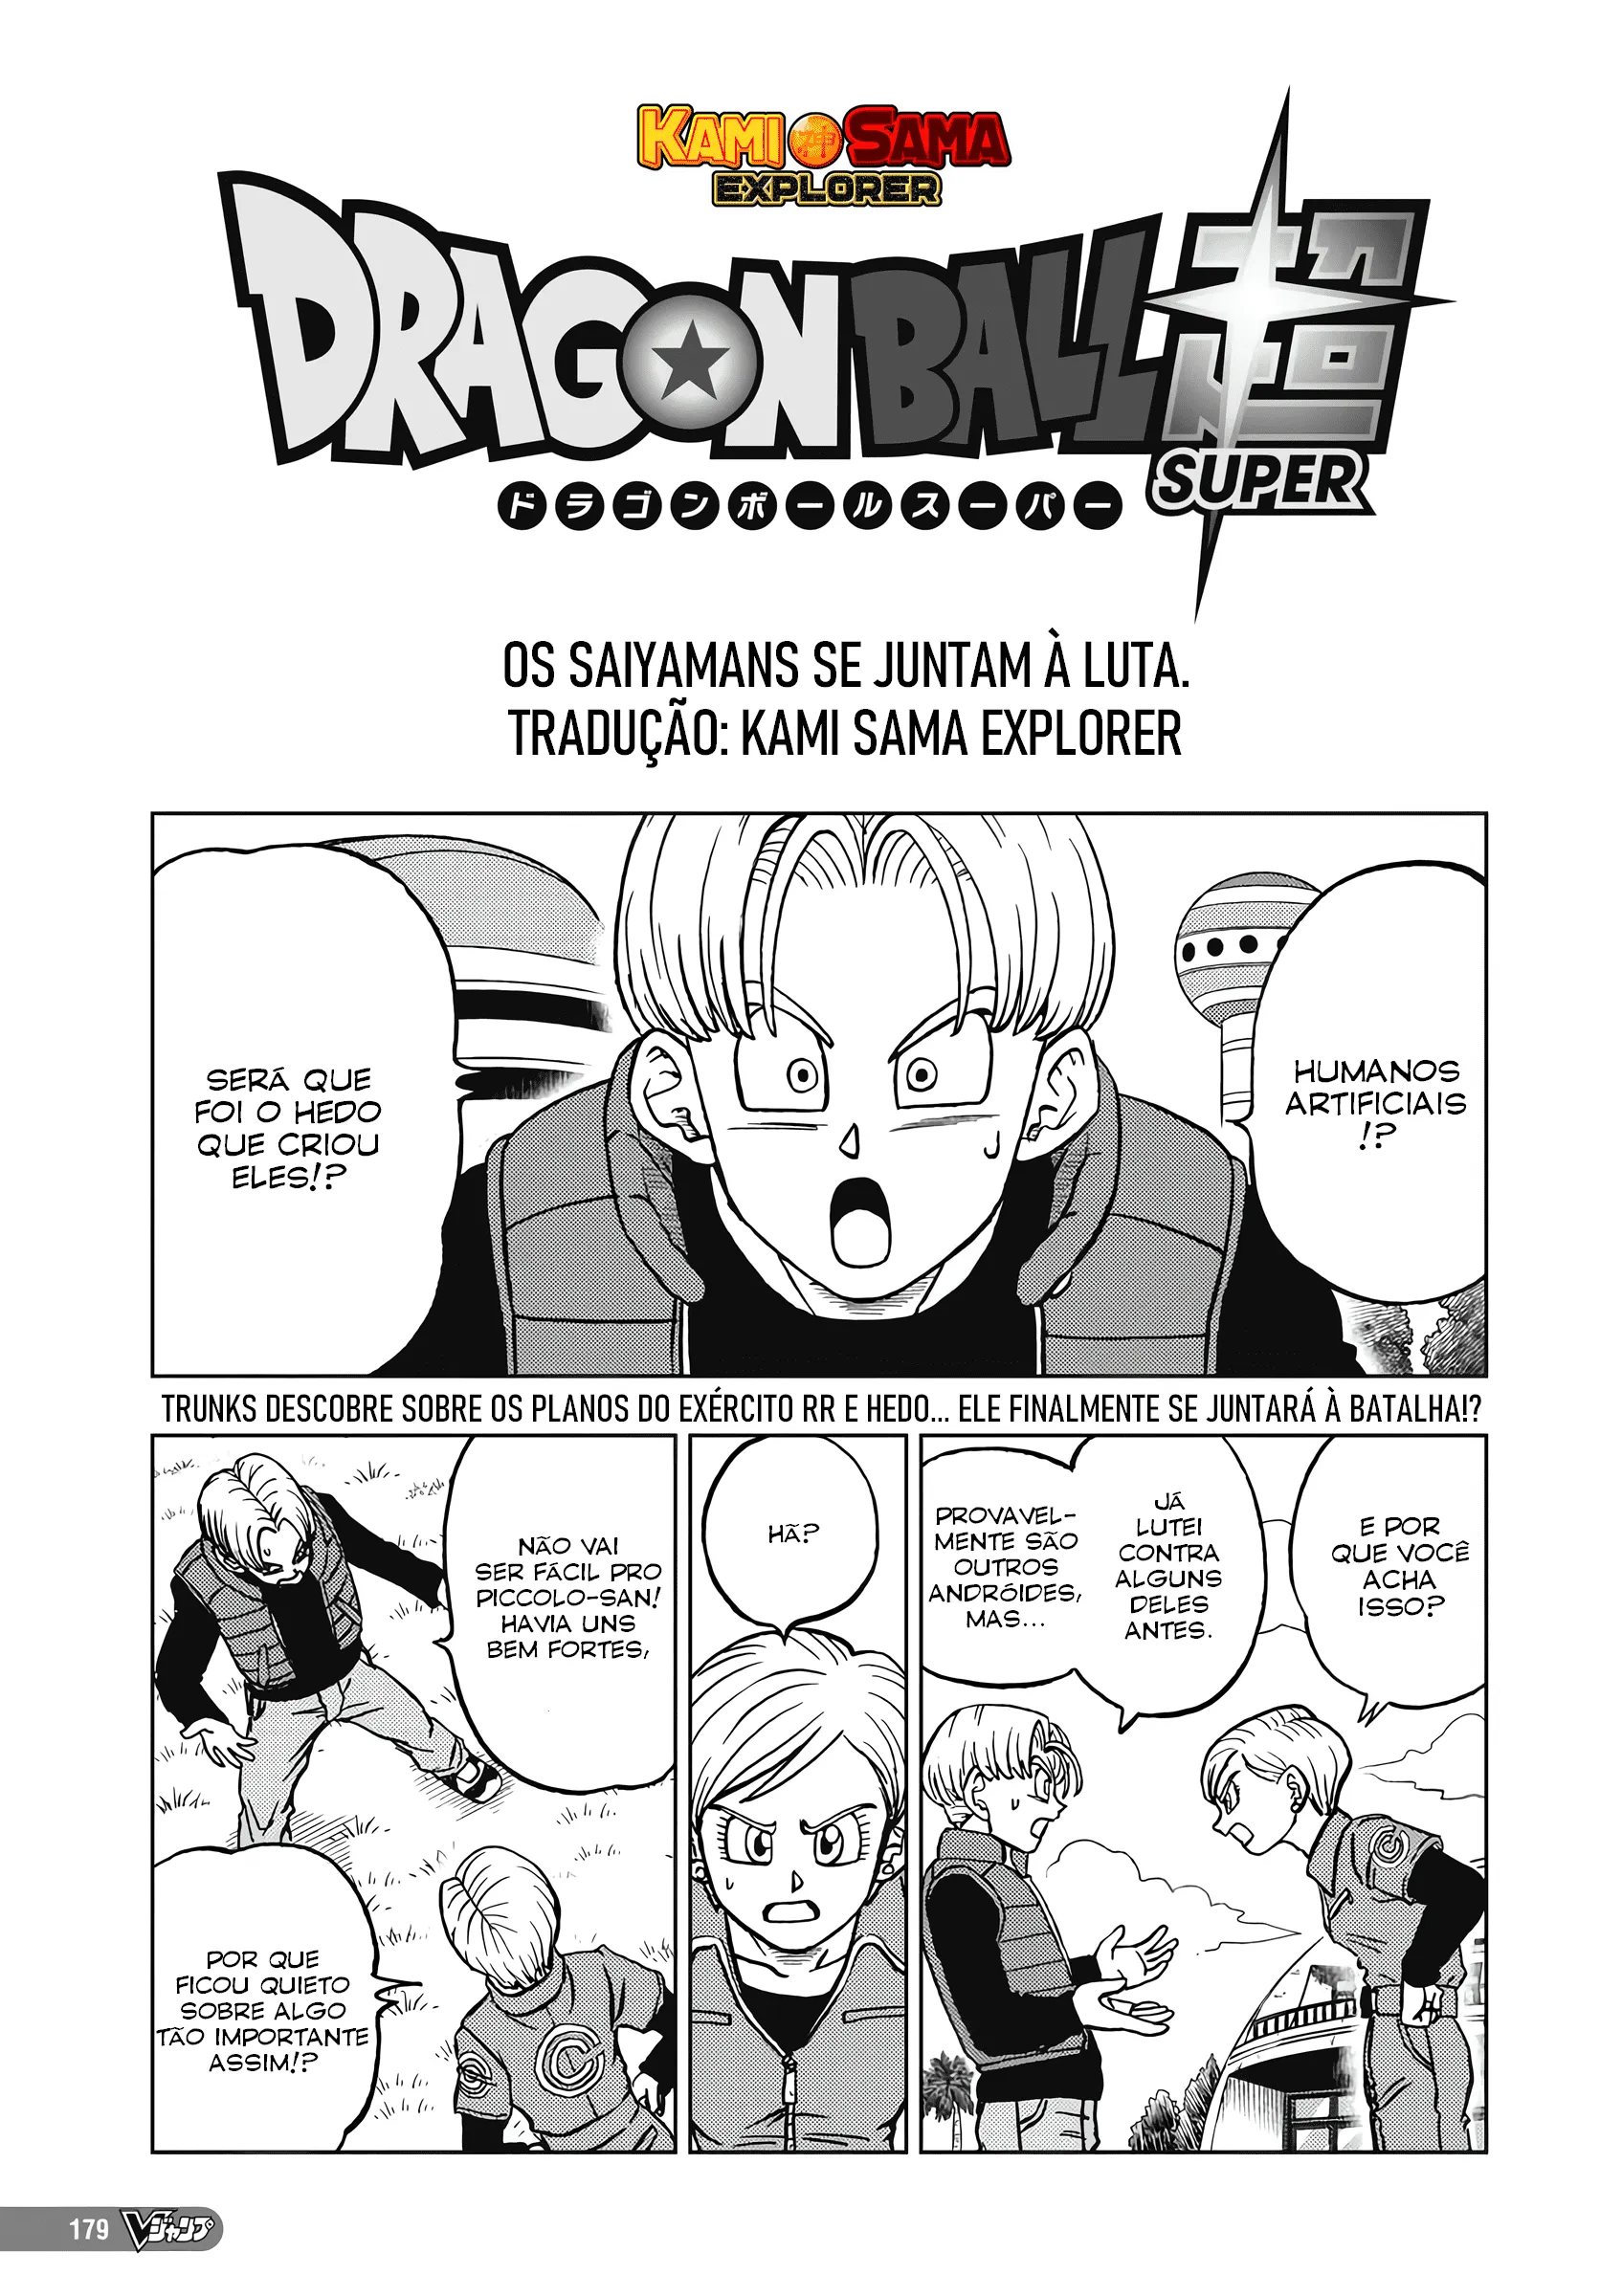 Dragon ball super manga, Dragon ball super, Dragon ball